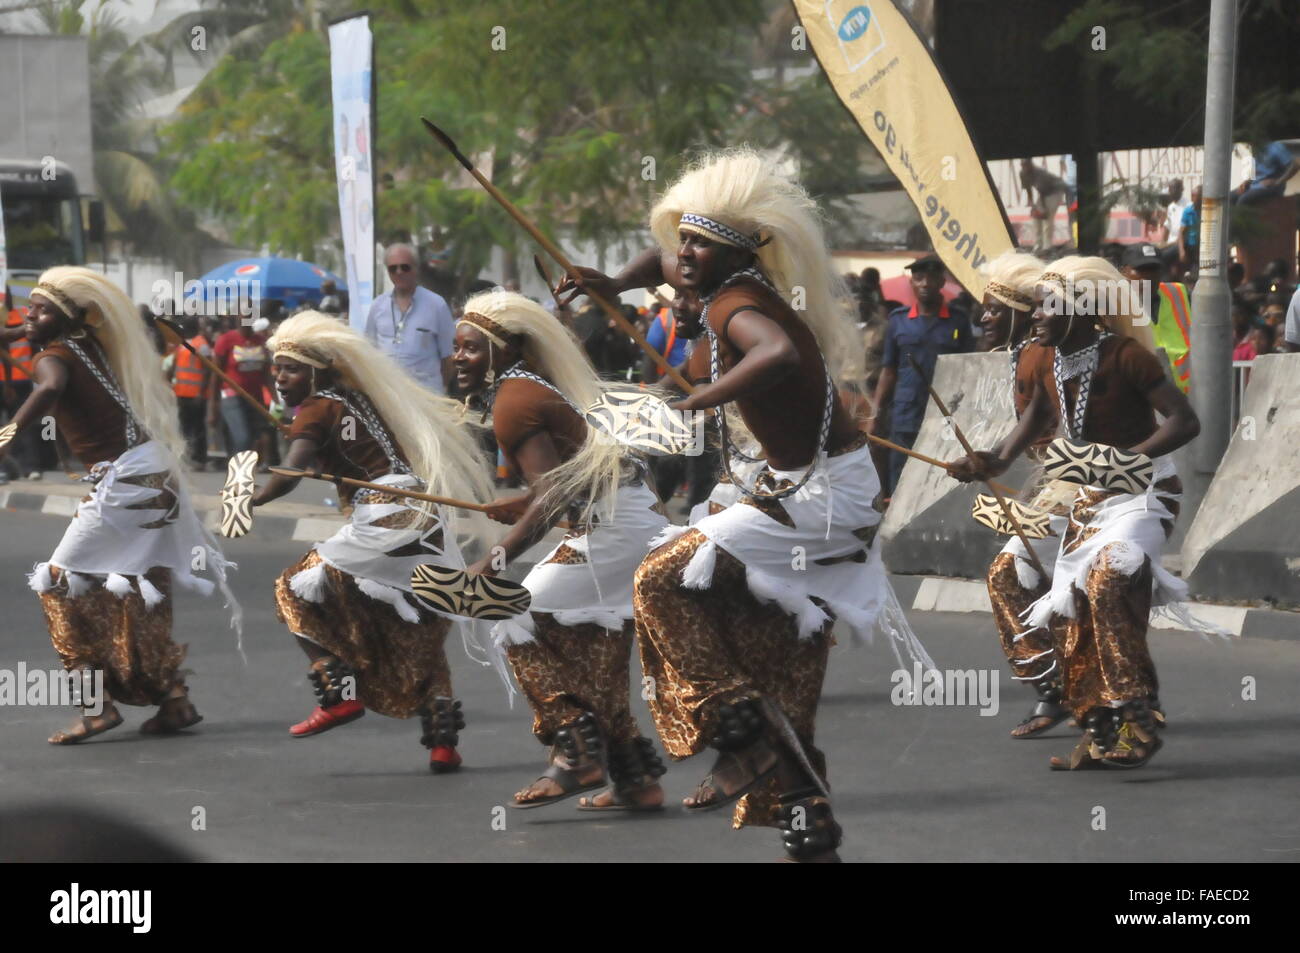 (151228)--CALABAR(NIGERIA), 28. Dezember 2015 (Xinhua)--Darsteller tanzen während der Parade von Calabar Karneval in Calabar, die Hauptstadt des Cross River State im südöstlichen Nigeria, 28. Dezember 2015. Calabar Karneval, markiert auch "Afrikas größte Street Party", begann am Montag in Calabar und Zehntausende von lokalen Bewohner Festzug. Künstler aus Italien, Brasilien, Spanien, Kenia und Simbabwe nahmen an der Veranstaltung teil. (Xinhua/Jiang Xintong) Stockfoto